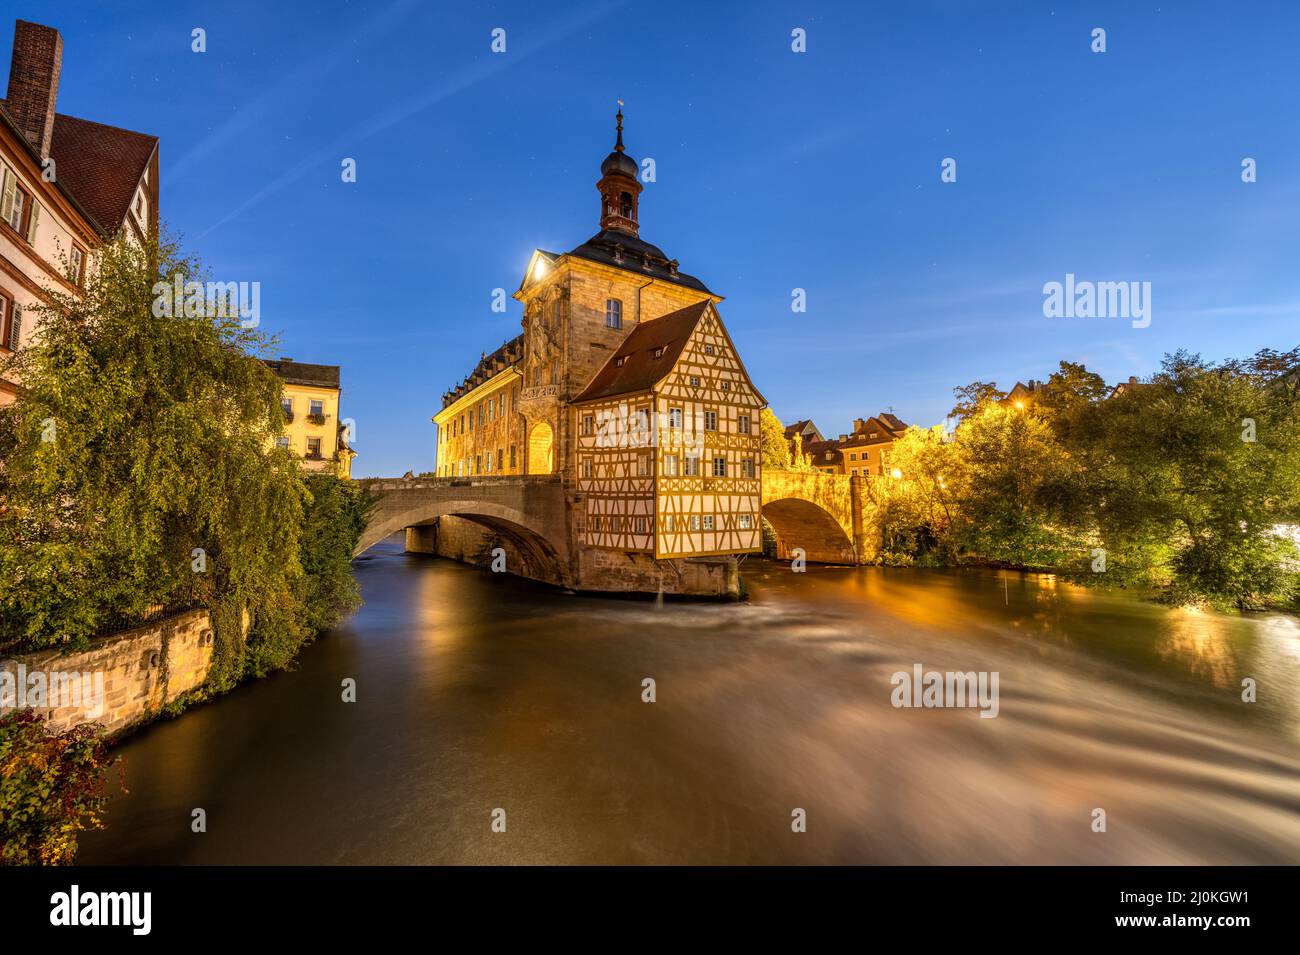 El entramado de madera Antiguo Ayuntamiento de Bamberg en Alemania durante la noche Foto de stock